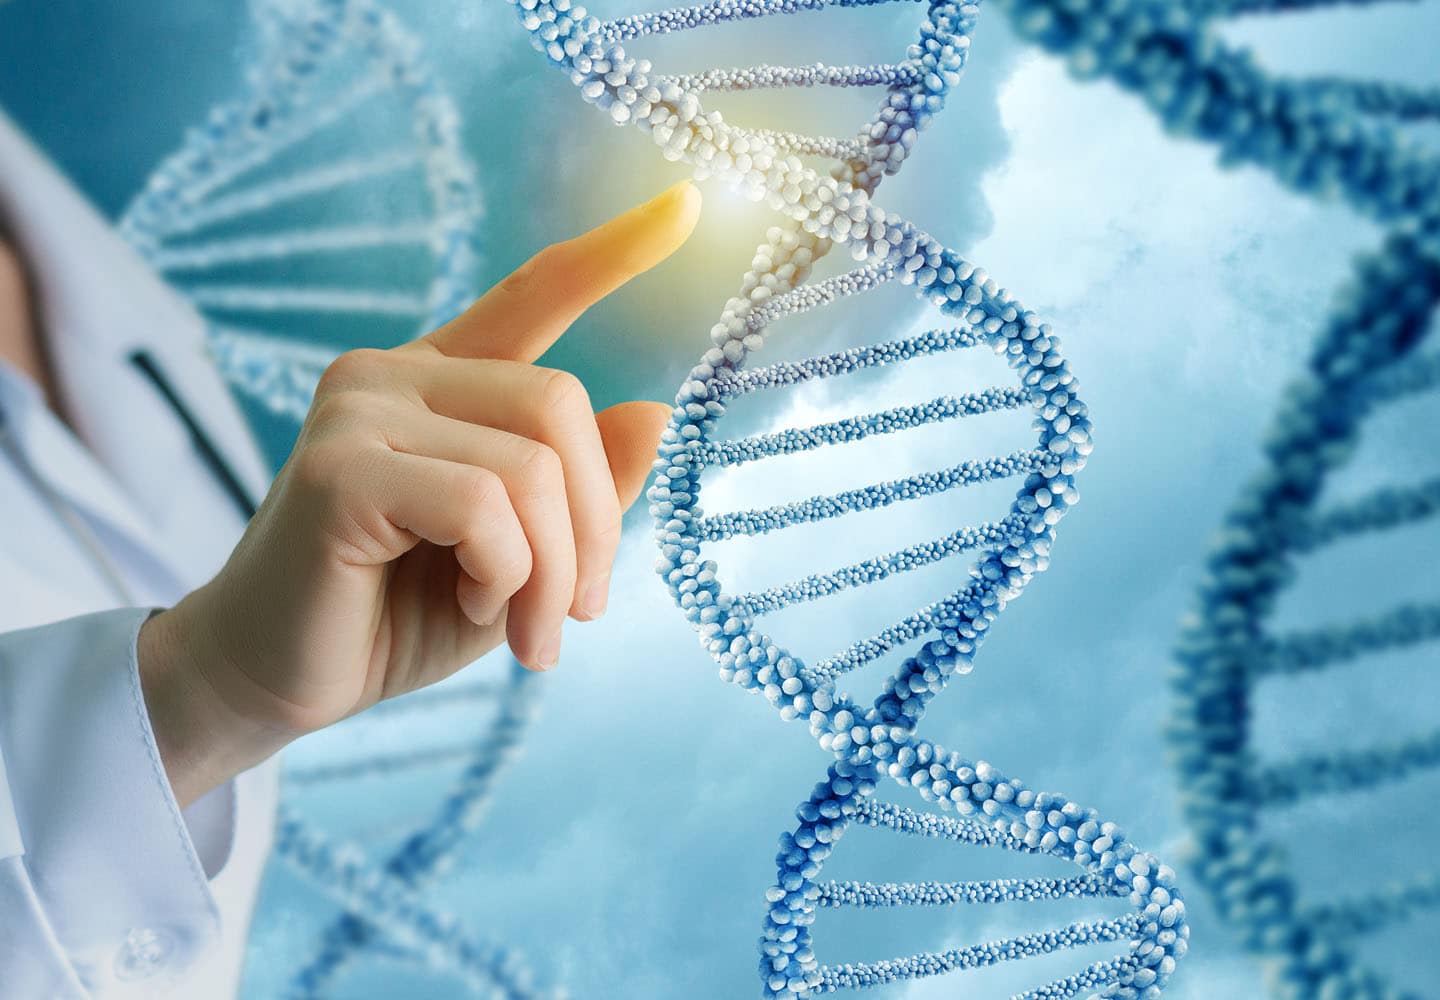 Genetics Major | Courses For Degree | Career Girls